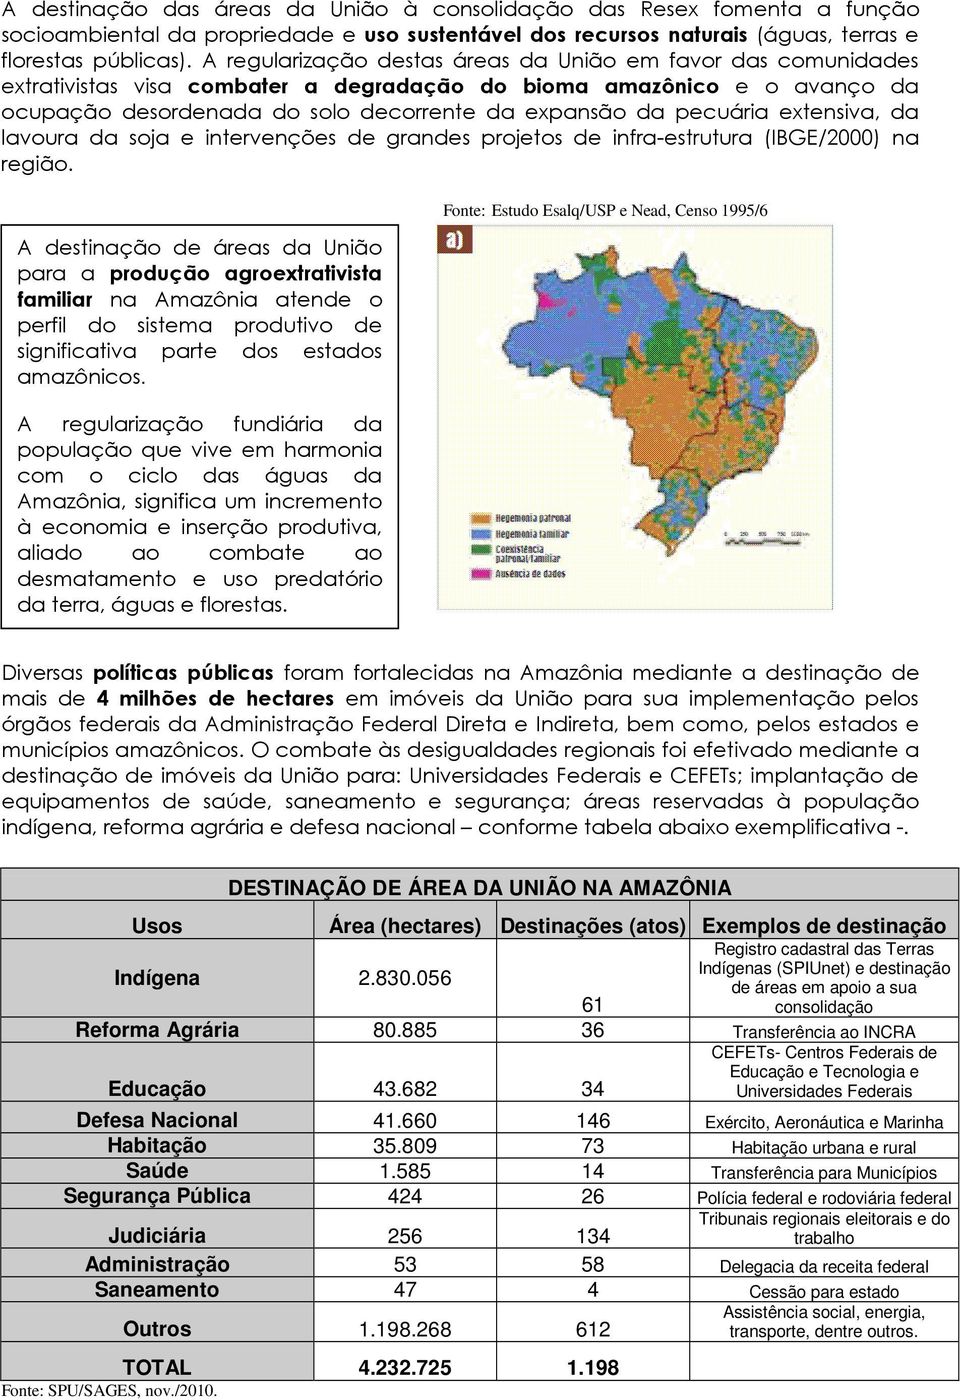 pecuária extensiva, da lavoura da soja e intervenções de grandes projetos de infra-estrutura (IBGE/2000) na região.